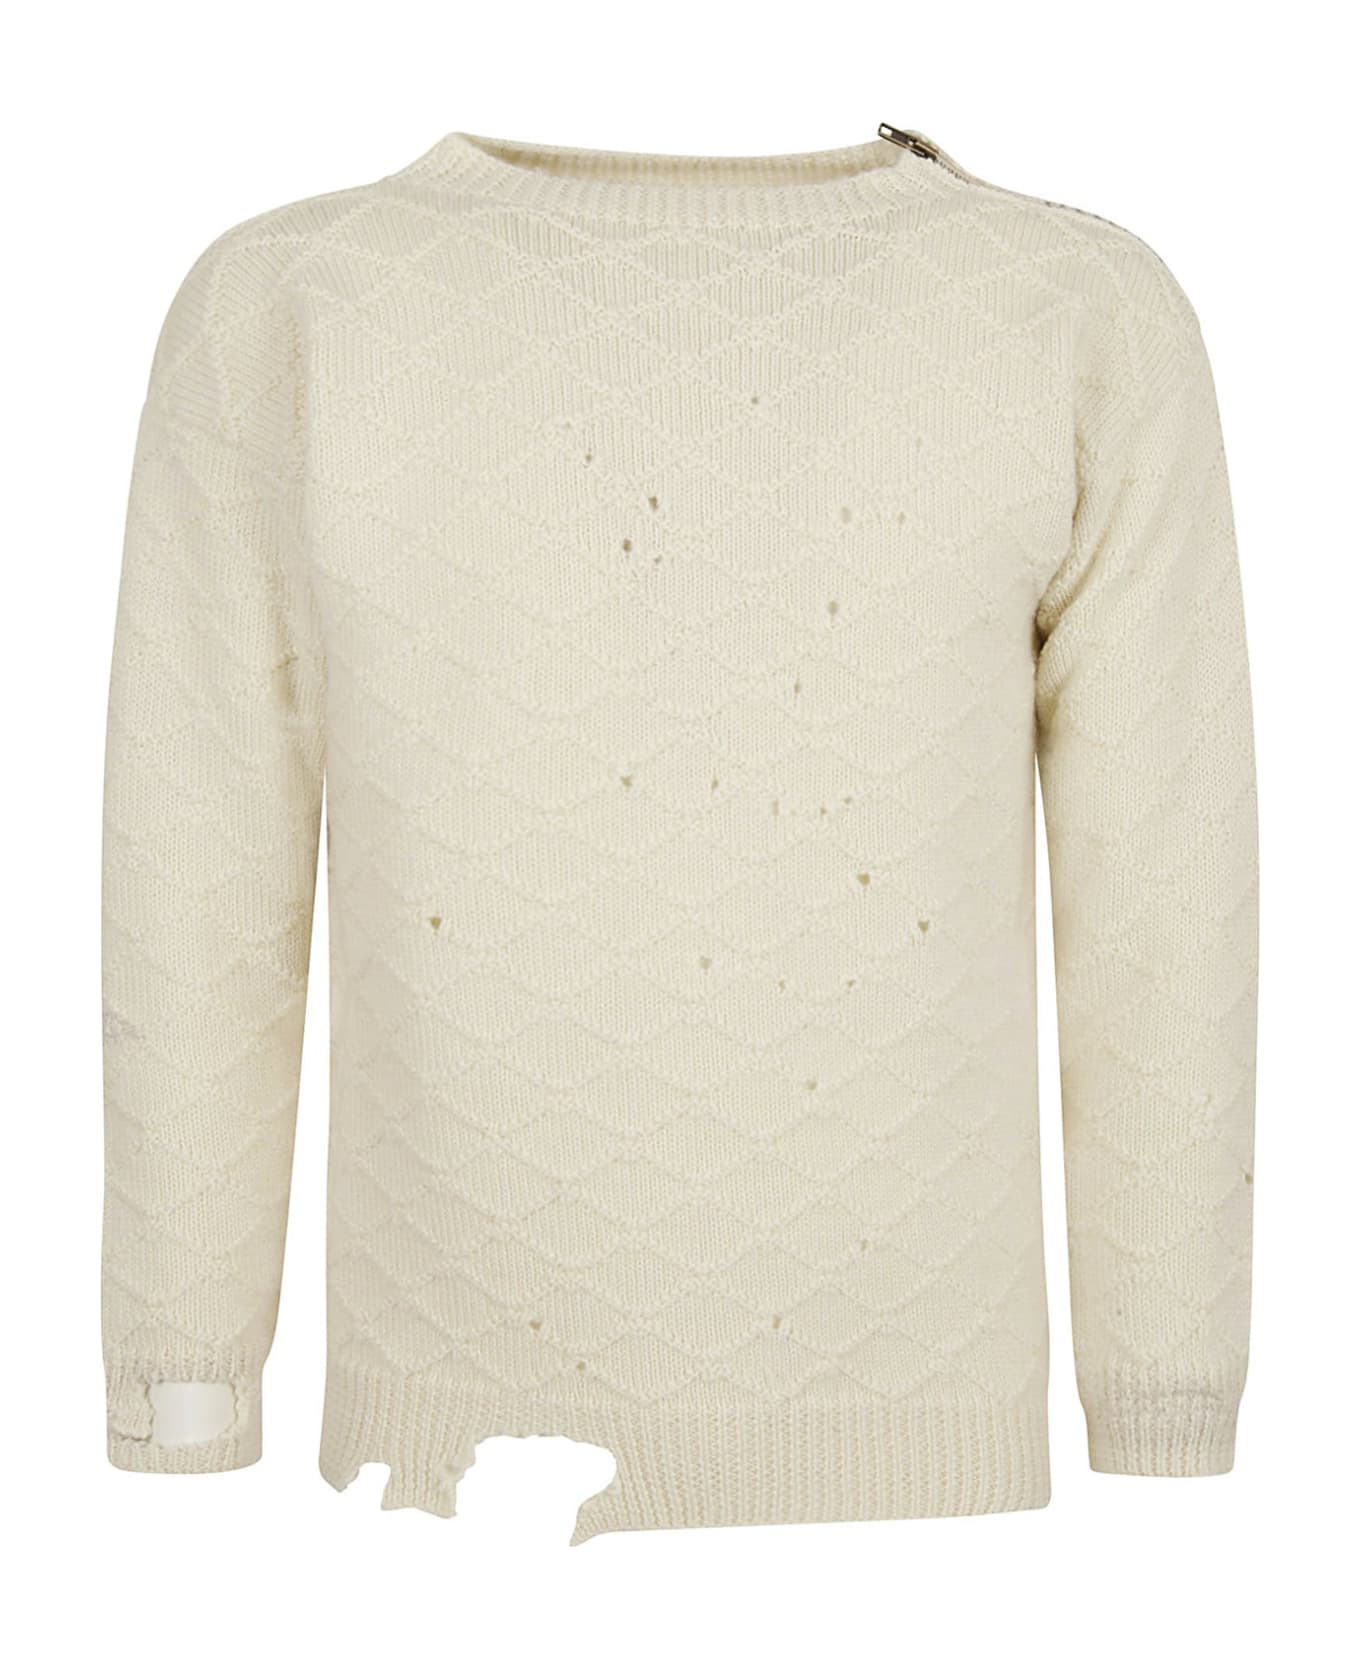 Maison Margiela Knitted Wool Sweater - Beige